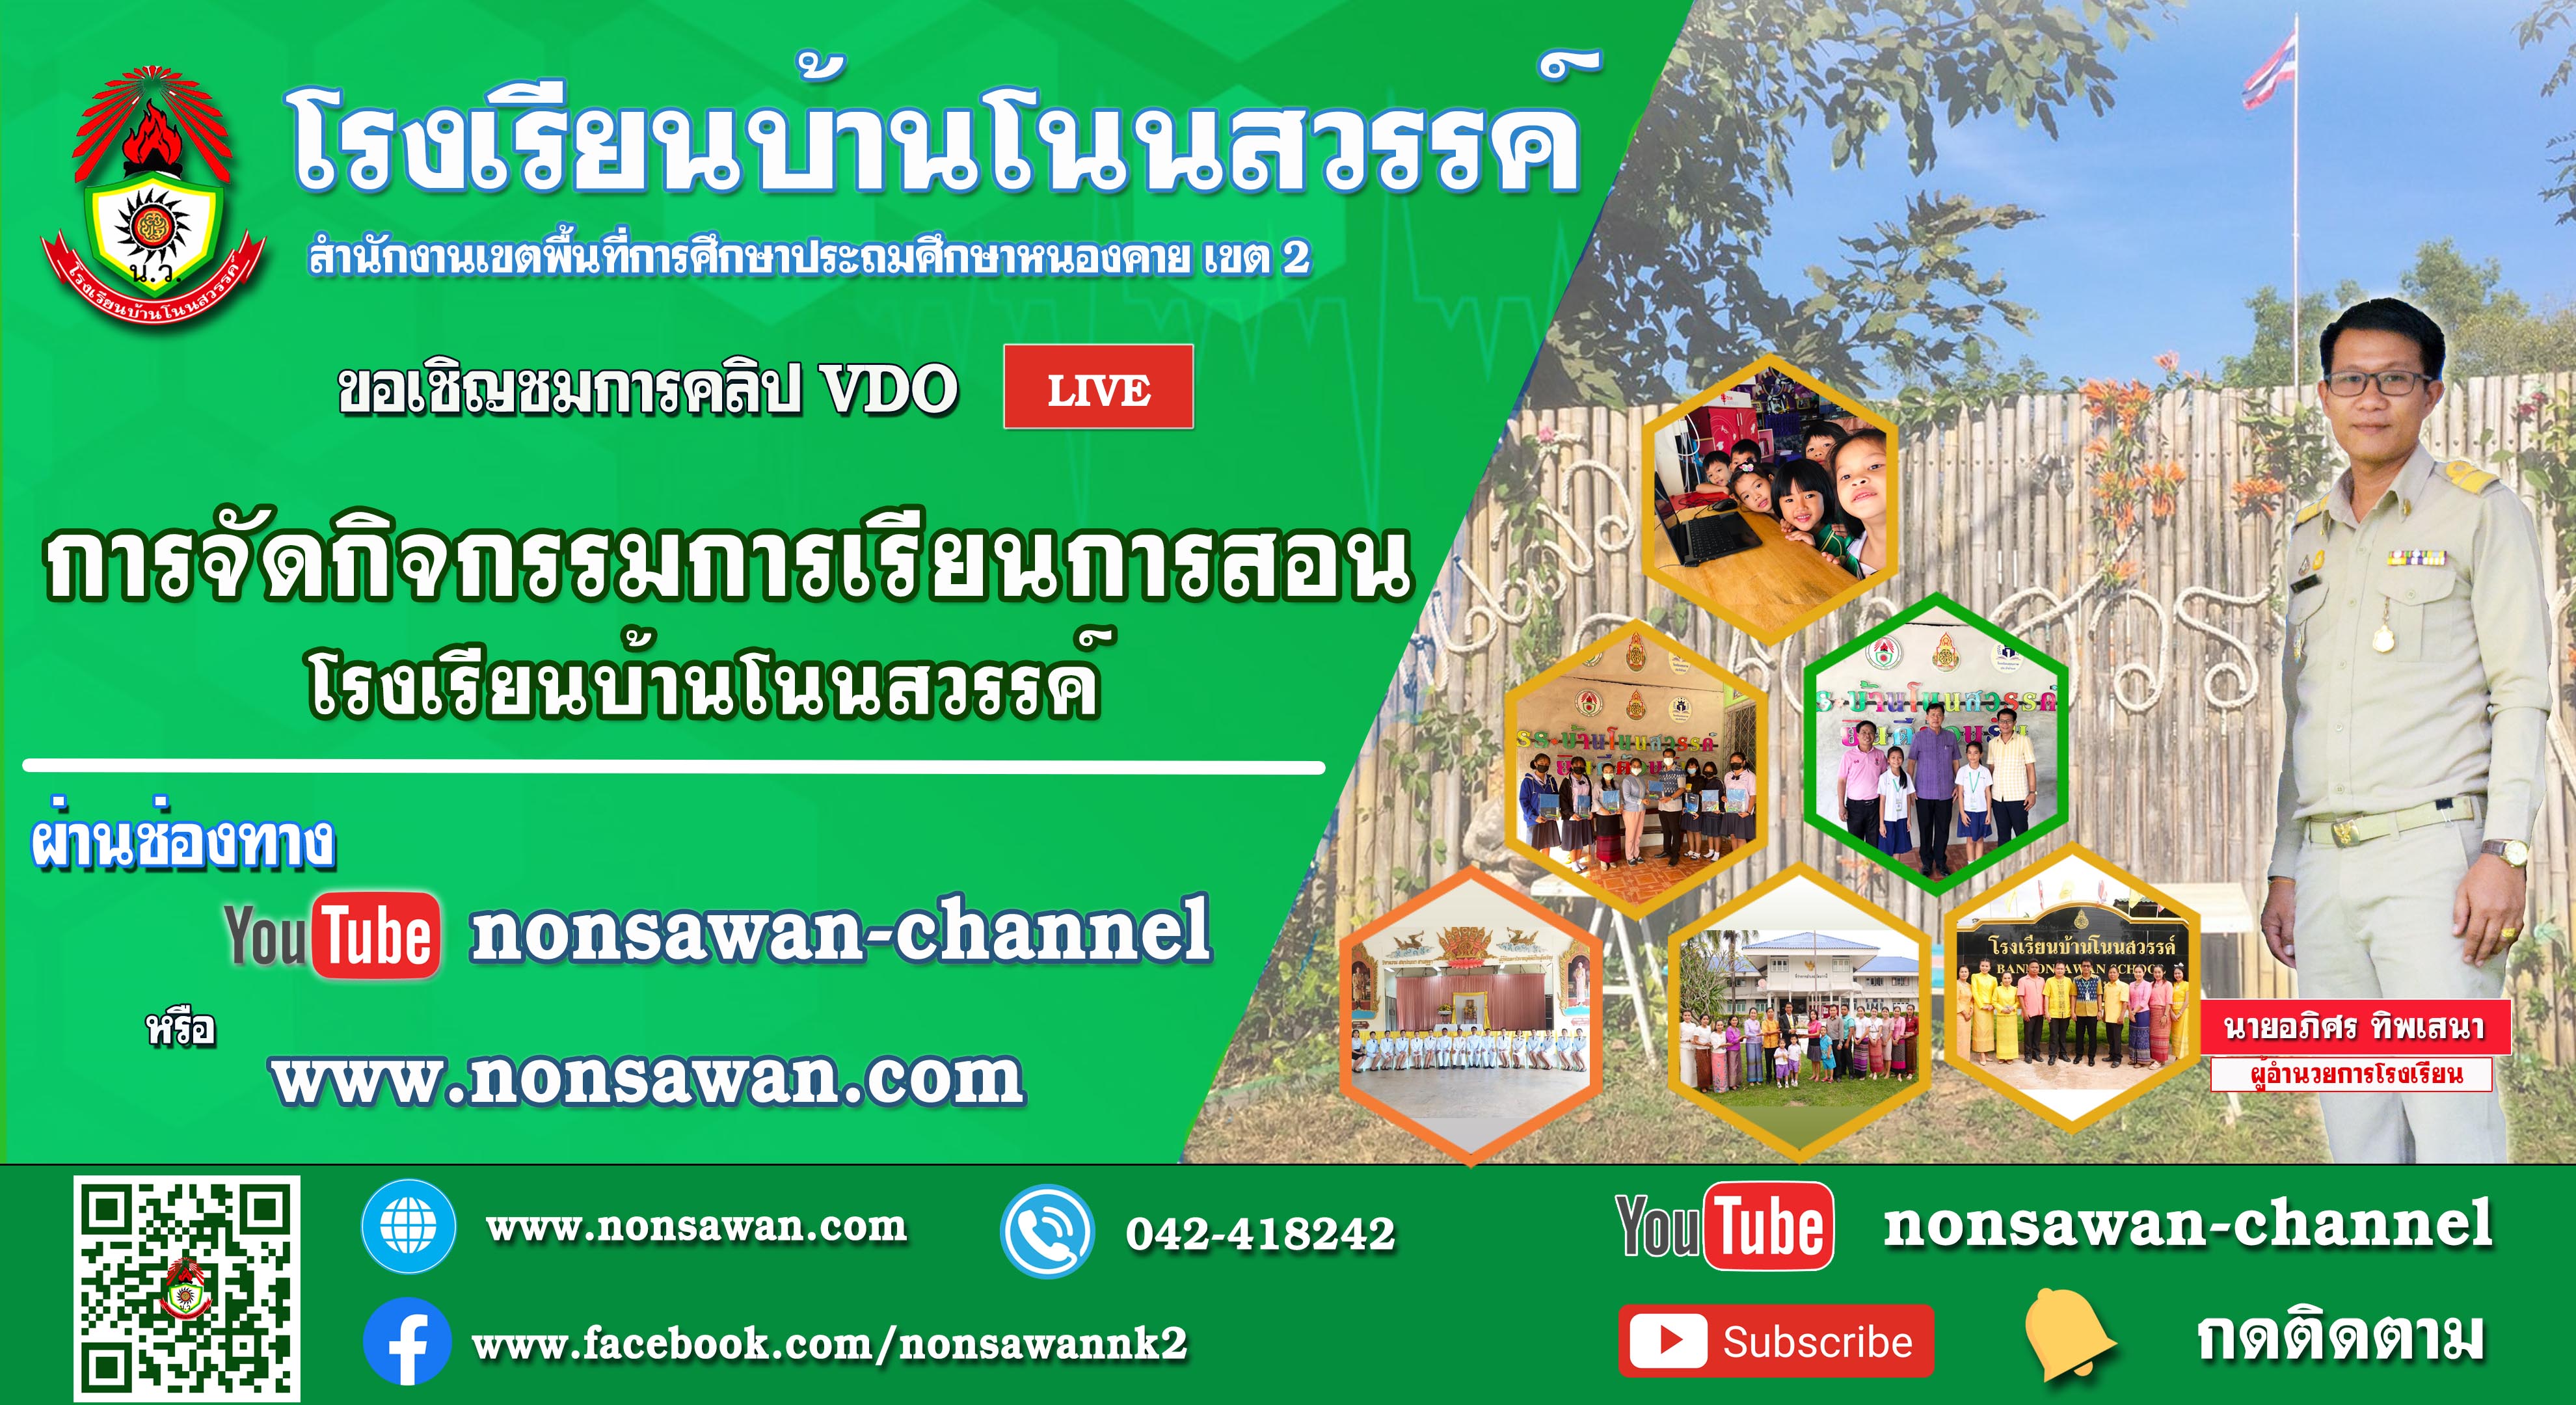 nonsawan-channel